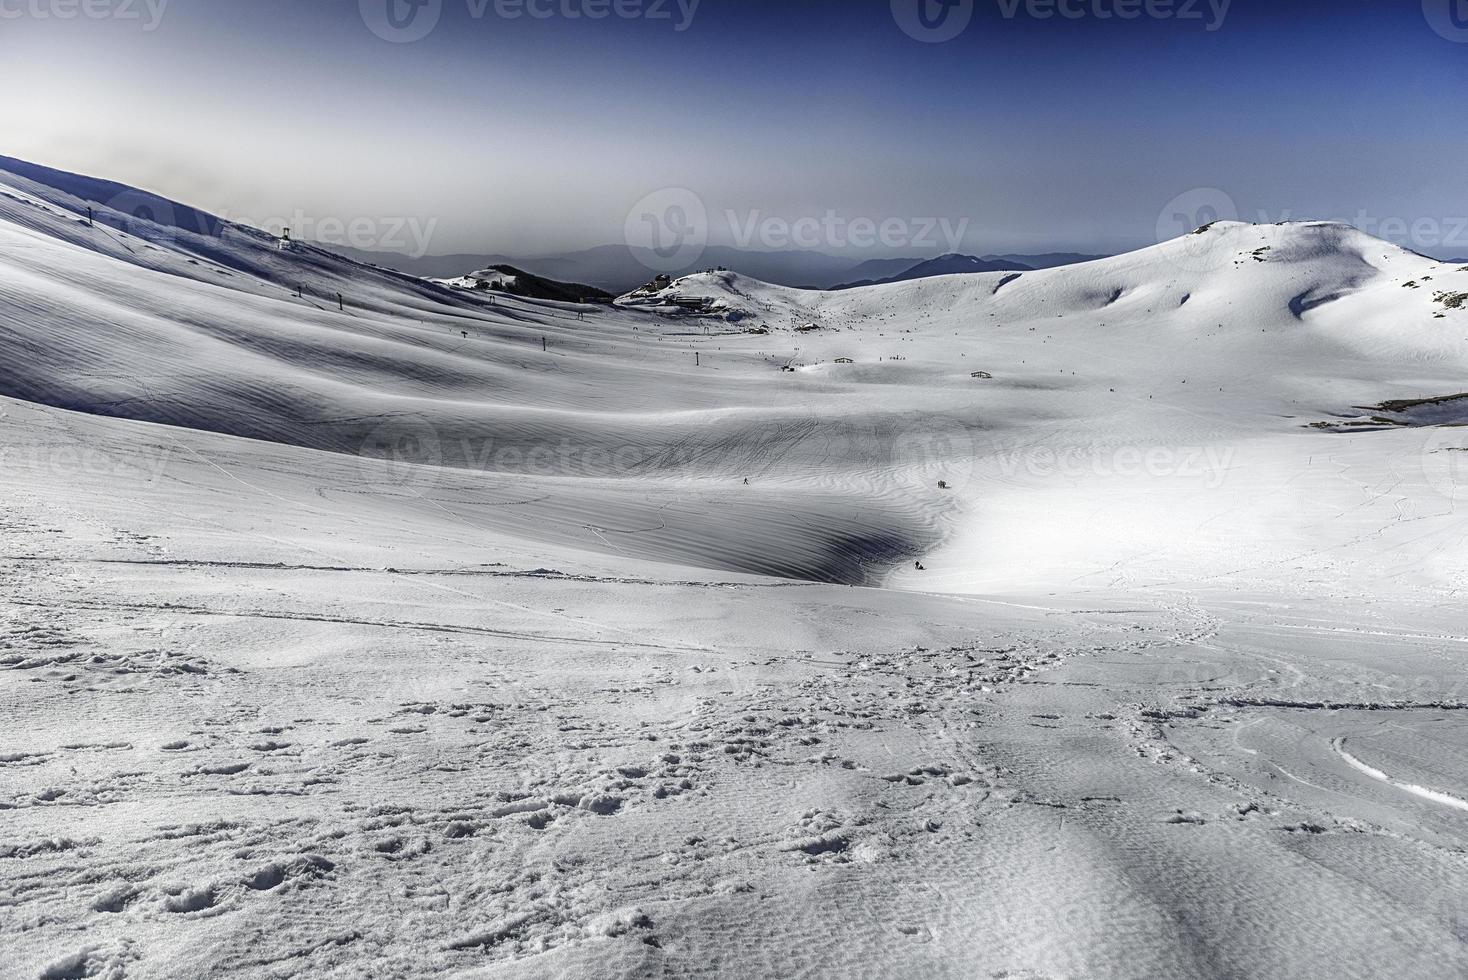 natursköna vinterlandskap med snötäckta berg, campocatino, Italien foto